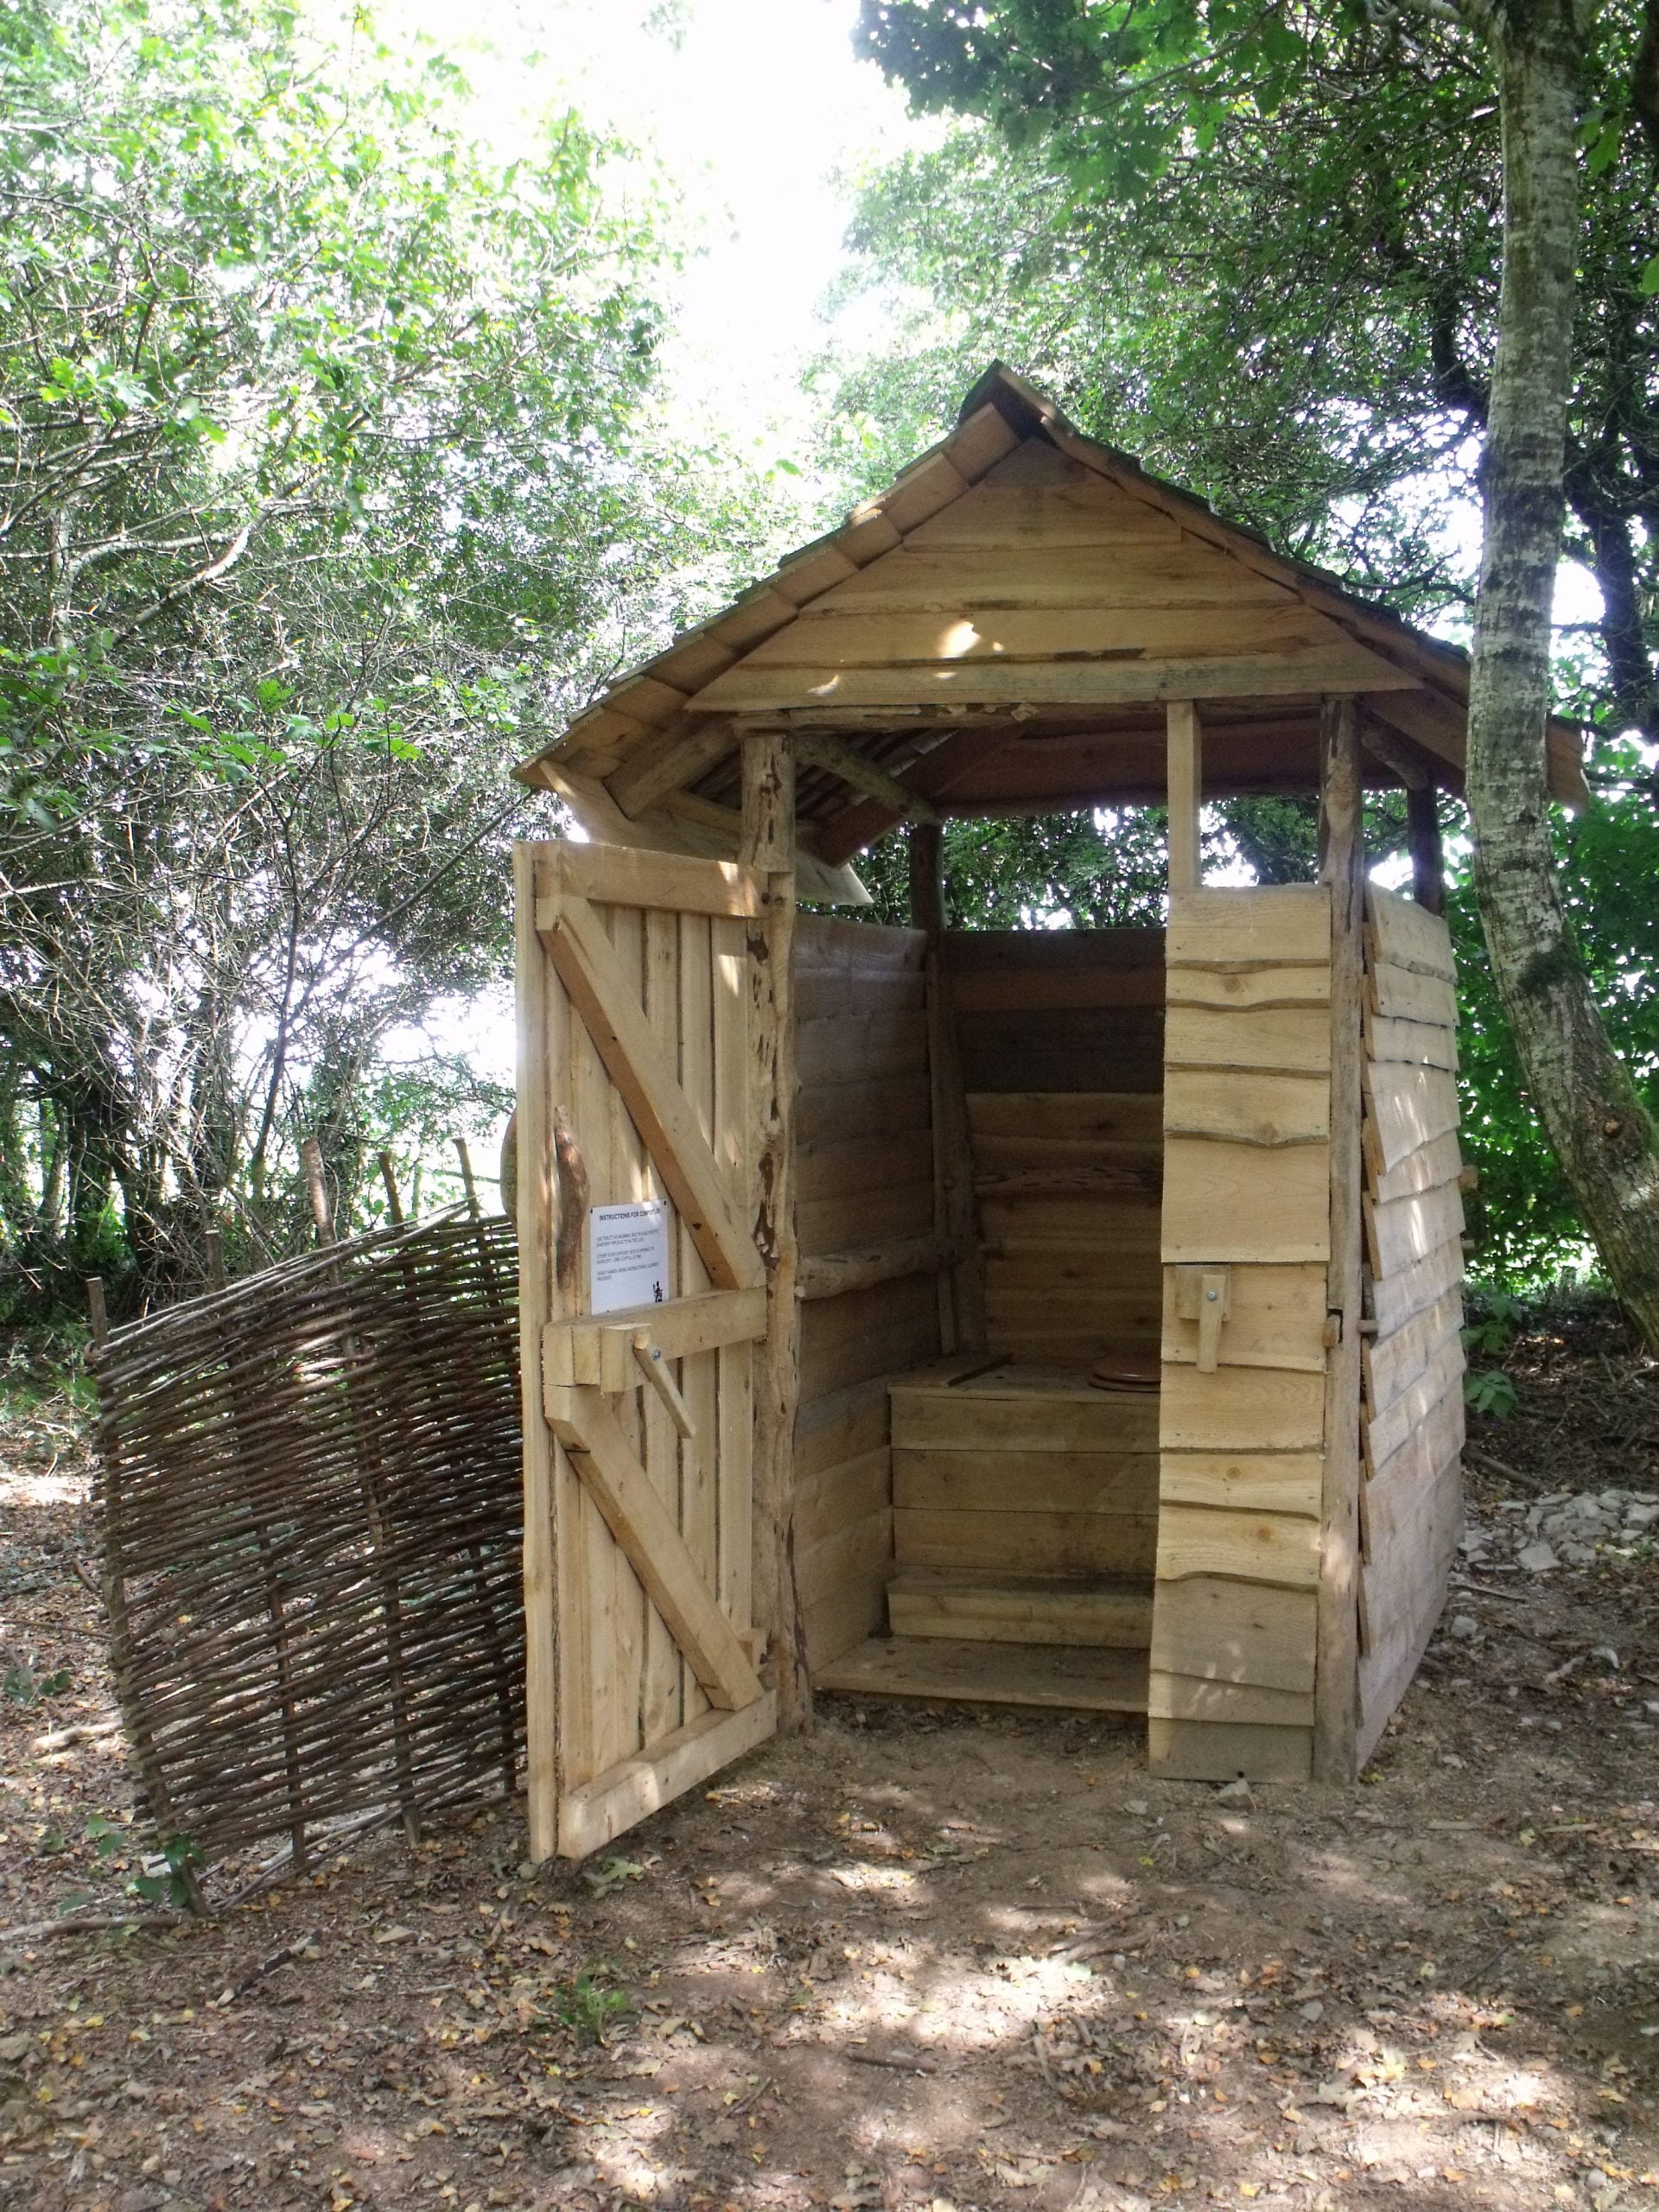 Build a Compost Toilet